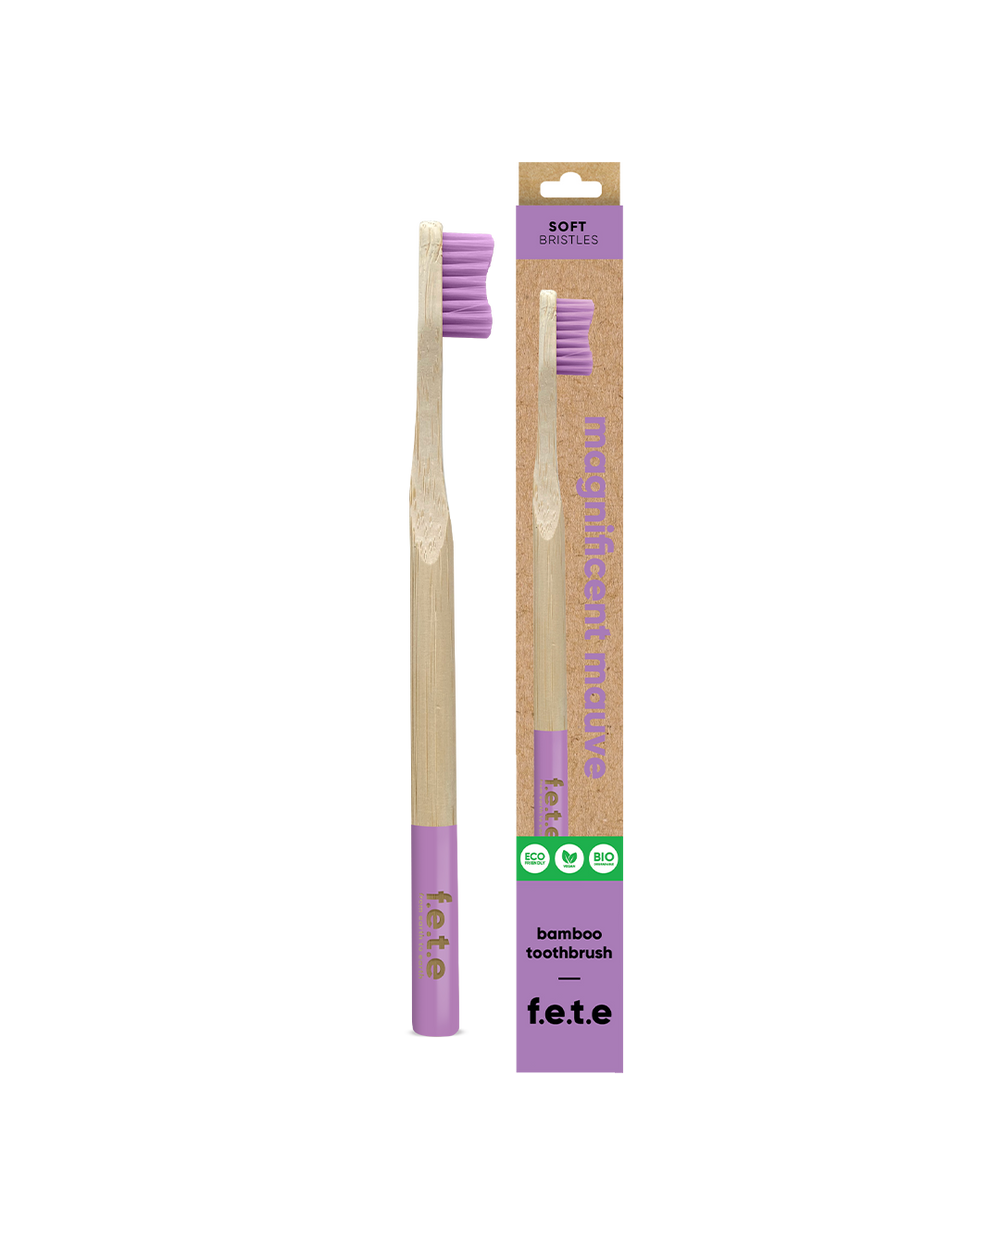 Bamboo toothbrush - soft fibers